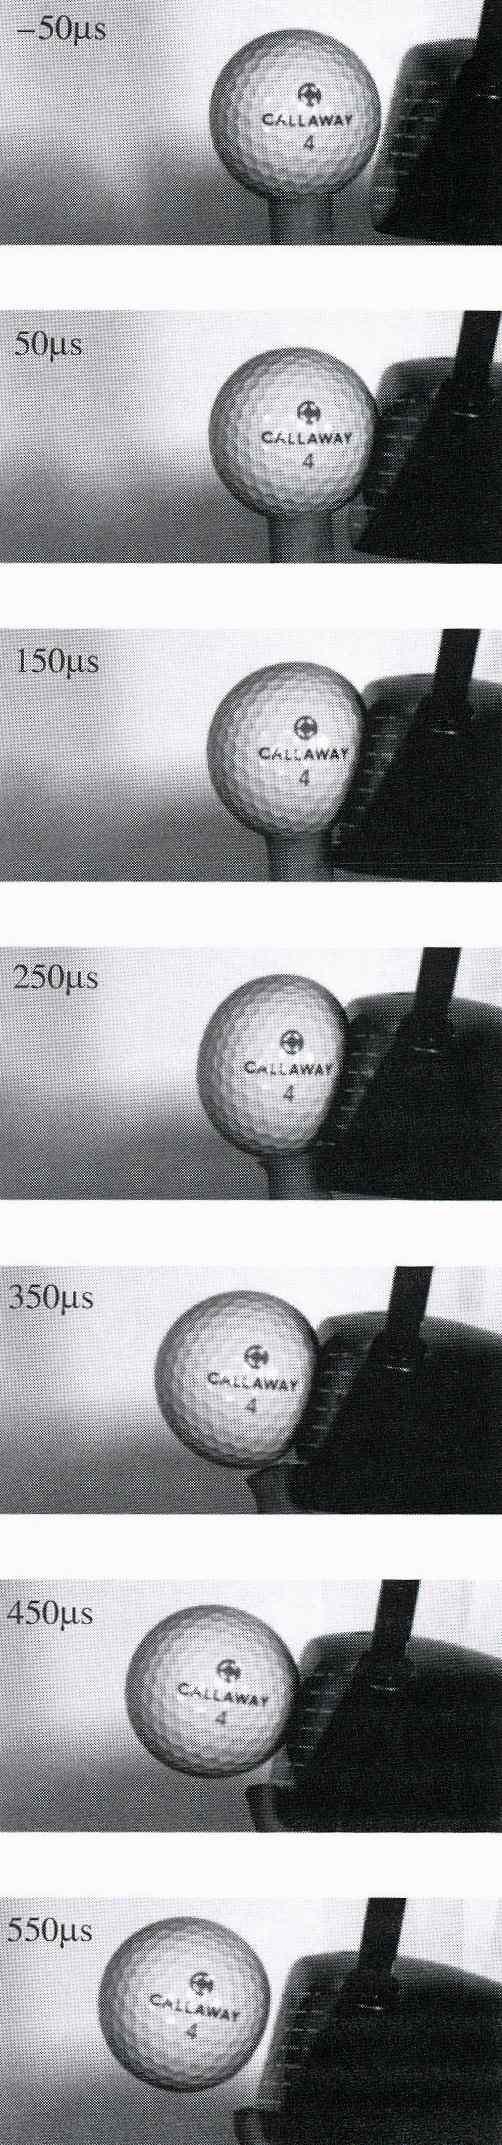 골프볼과 드라이버 헤드 가 임팩트하는 순간을 고속 카메 라로 촬영한 사진이다. 골프볼이 임팩트 시작 후 450μs초와 550μ s(0.00055초)에 골프볼이 약간 백 스핀을 하고 위 방향으로 움직인 것을 볼 수 있다. 이 경우에 골프 볼의 딤플42) 46)에 의한 백스핀의 효과를 측정하여 공기(Air)와의 마 찰을 계산하면 오류가 발생한다.23) 이 경우 헤드의 면 두께에 따라 볼 속도는 달라진다.